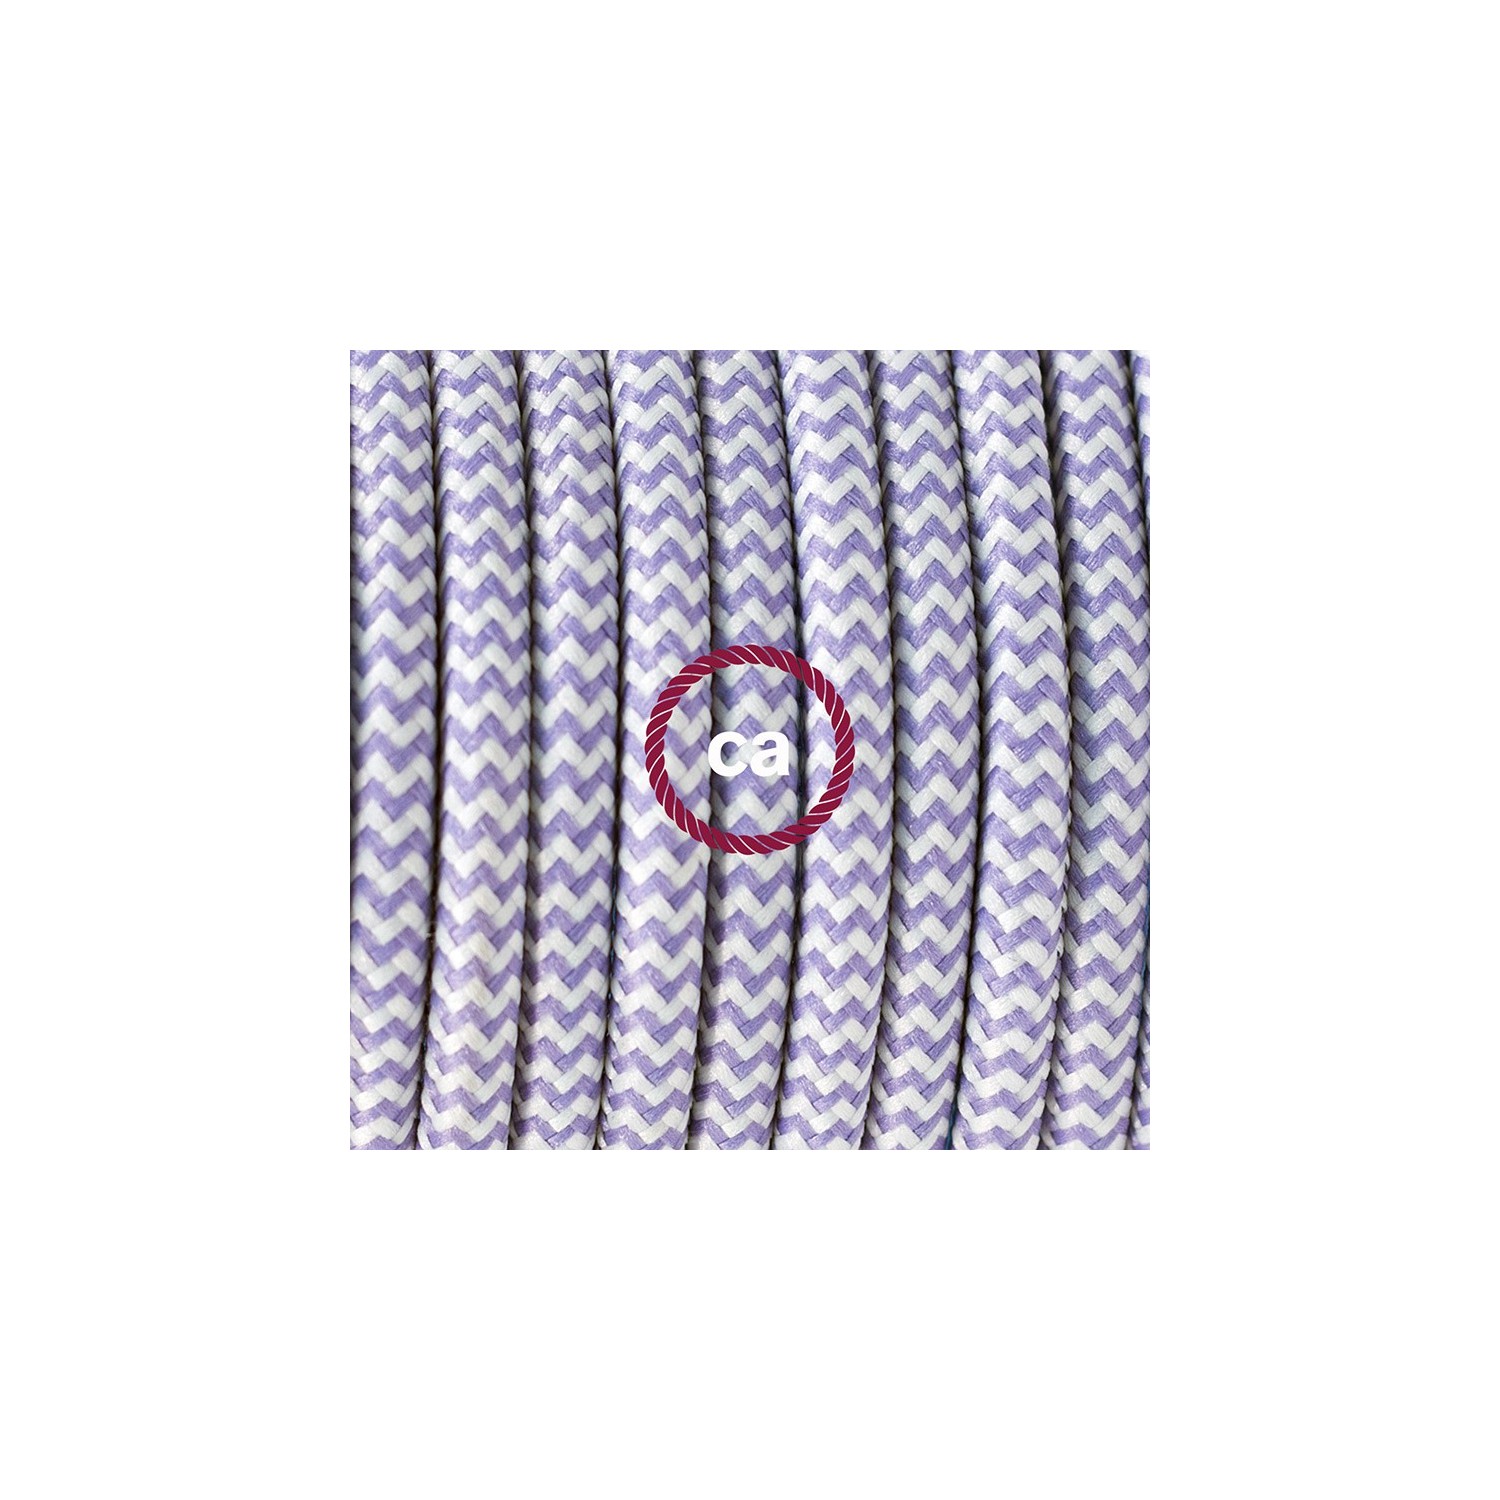 Ronde flexibele textielkabel van viscose met schakelaar en stekker.RZ07 - zigzag wit/lila 1,80 m.